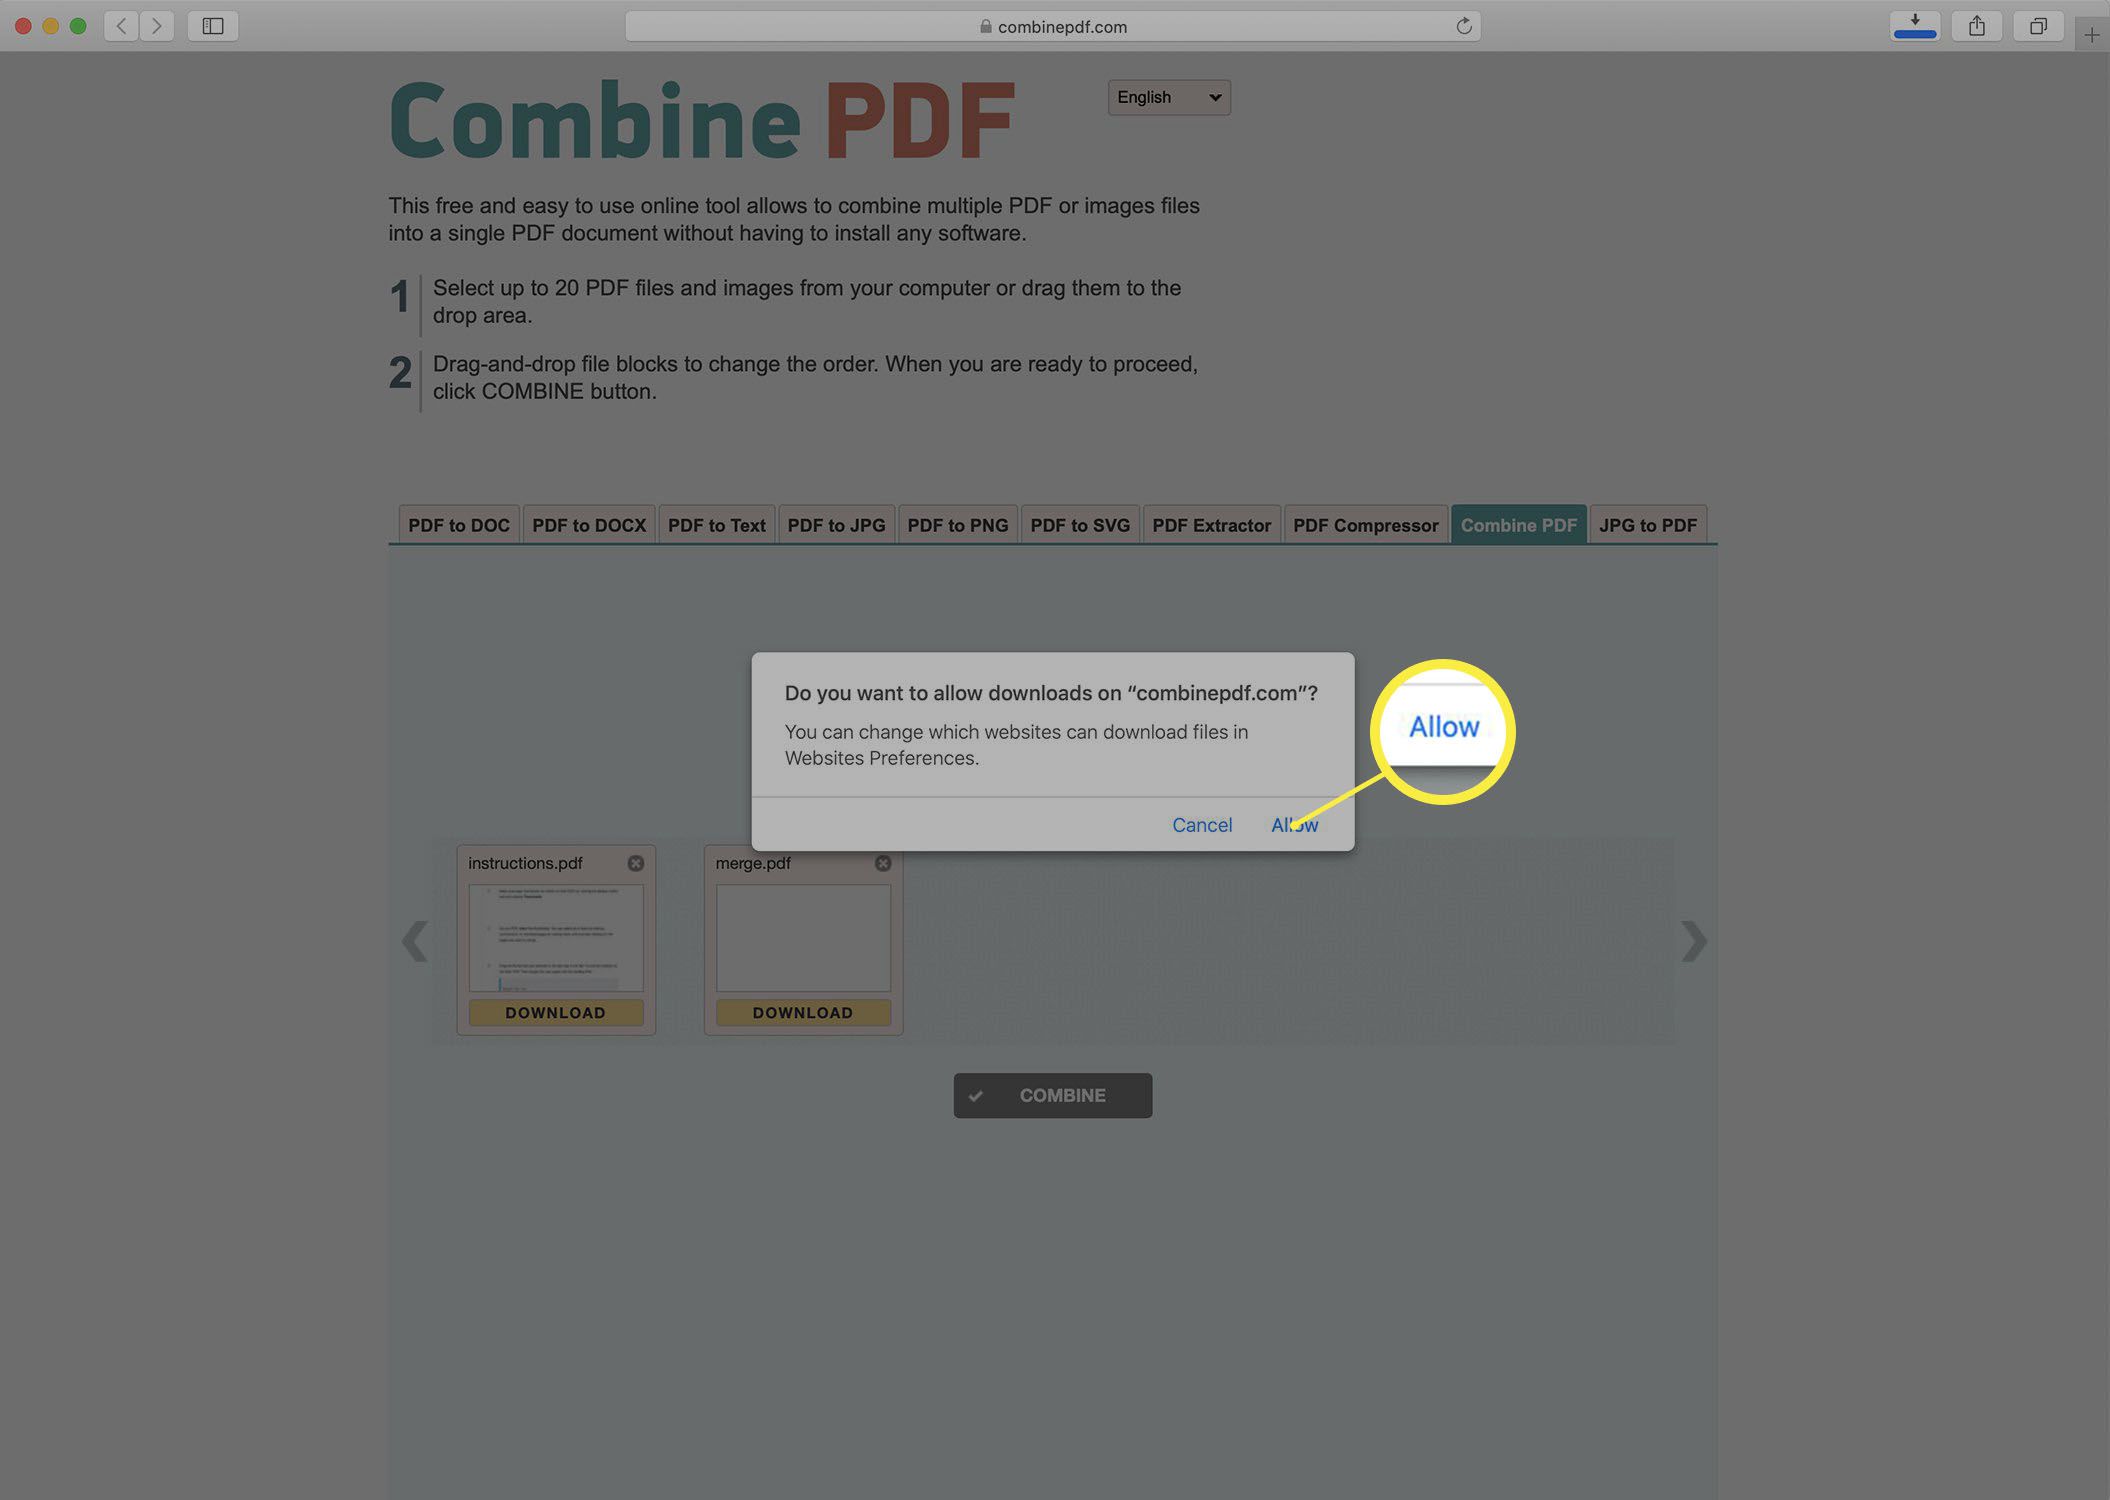 Screenshot downloaden van een samengevoegde PDF van de Combine PDF-website.